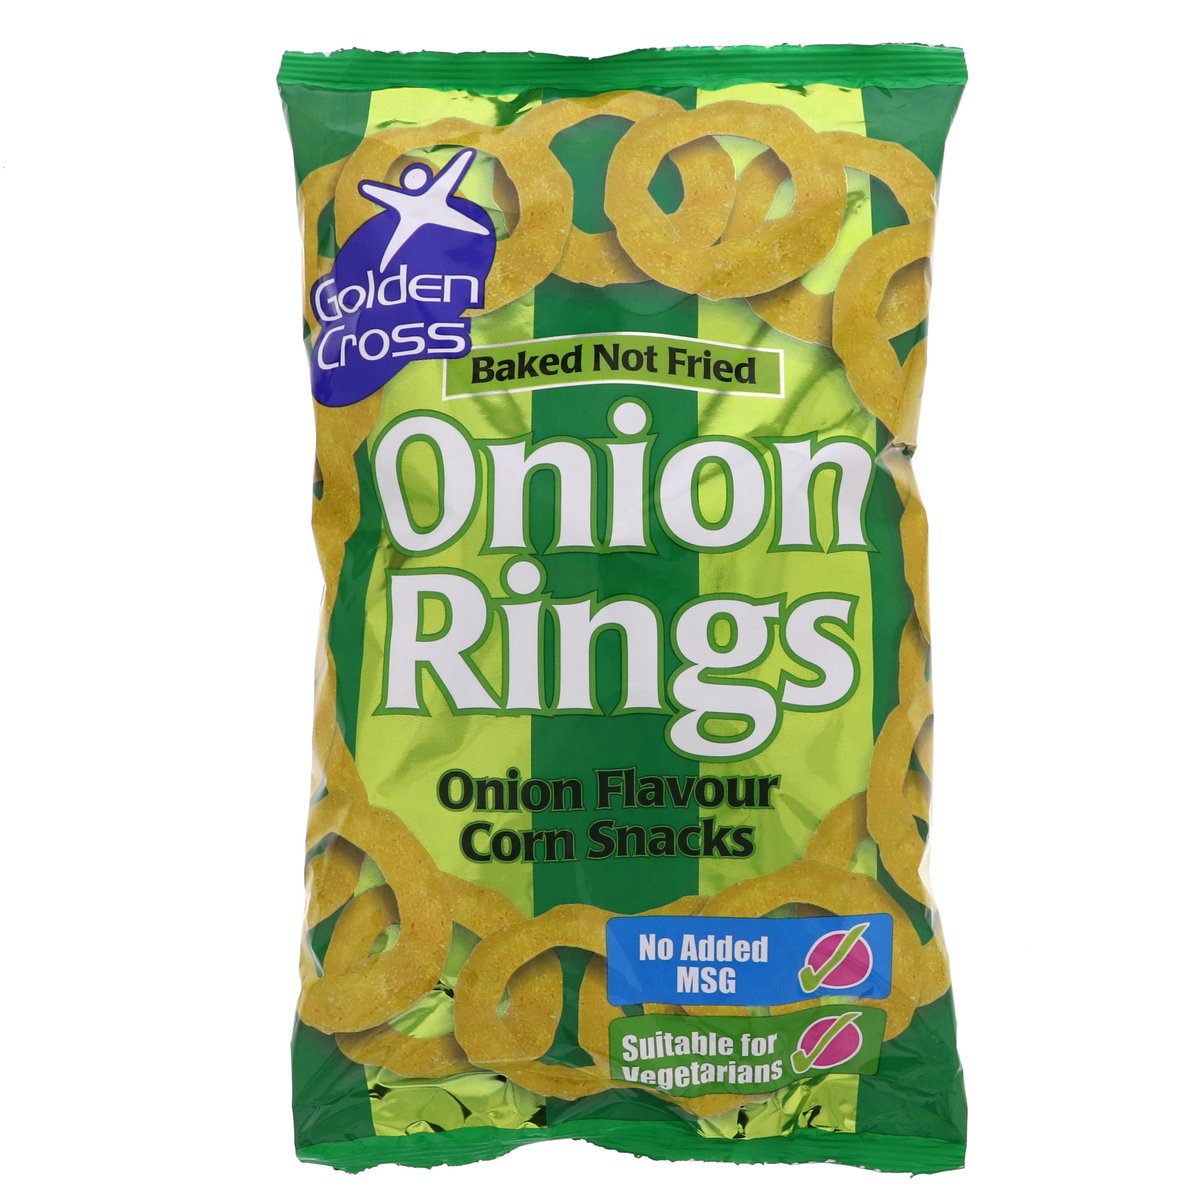 Golden Cross Onion Rings Corn Snacks 150 g